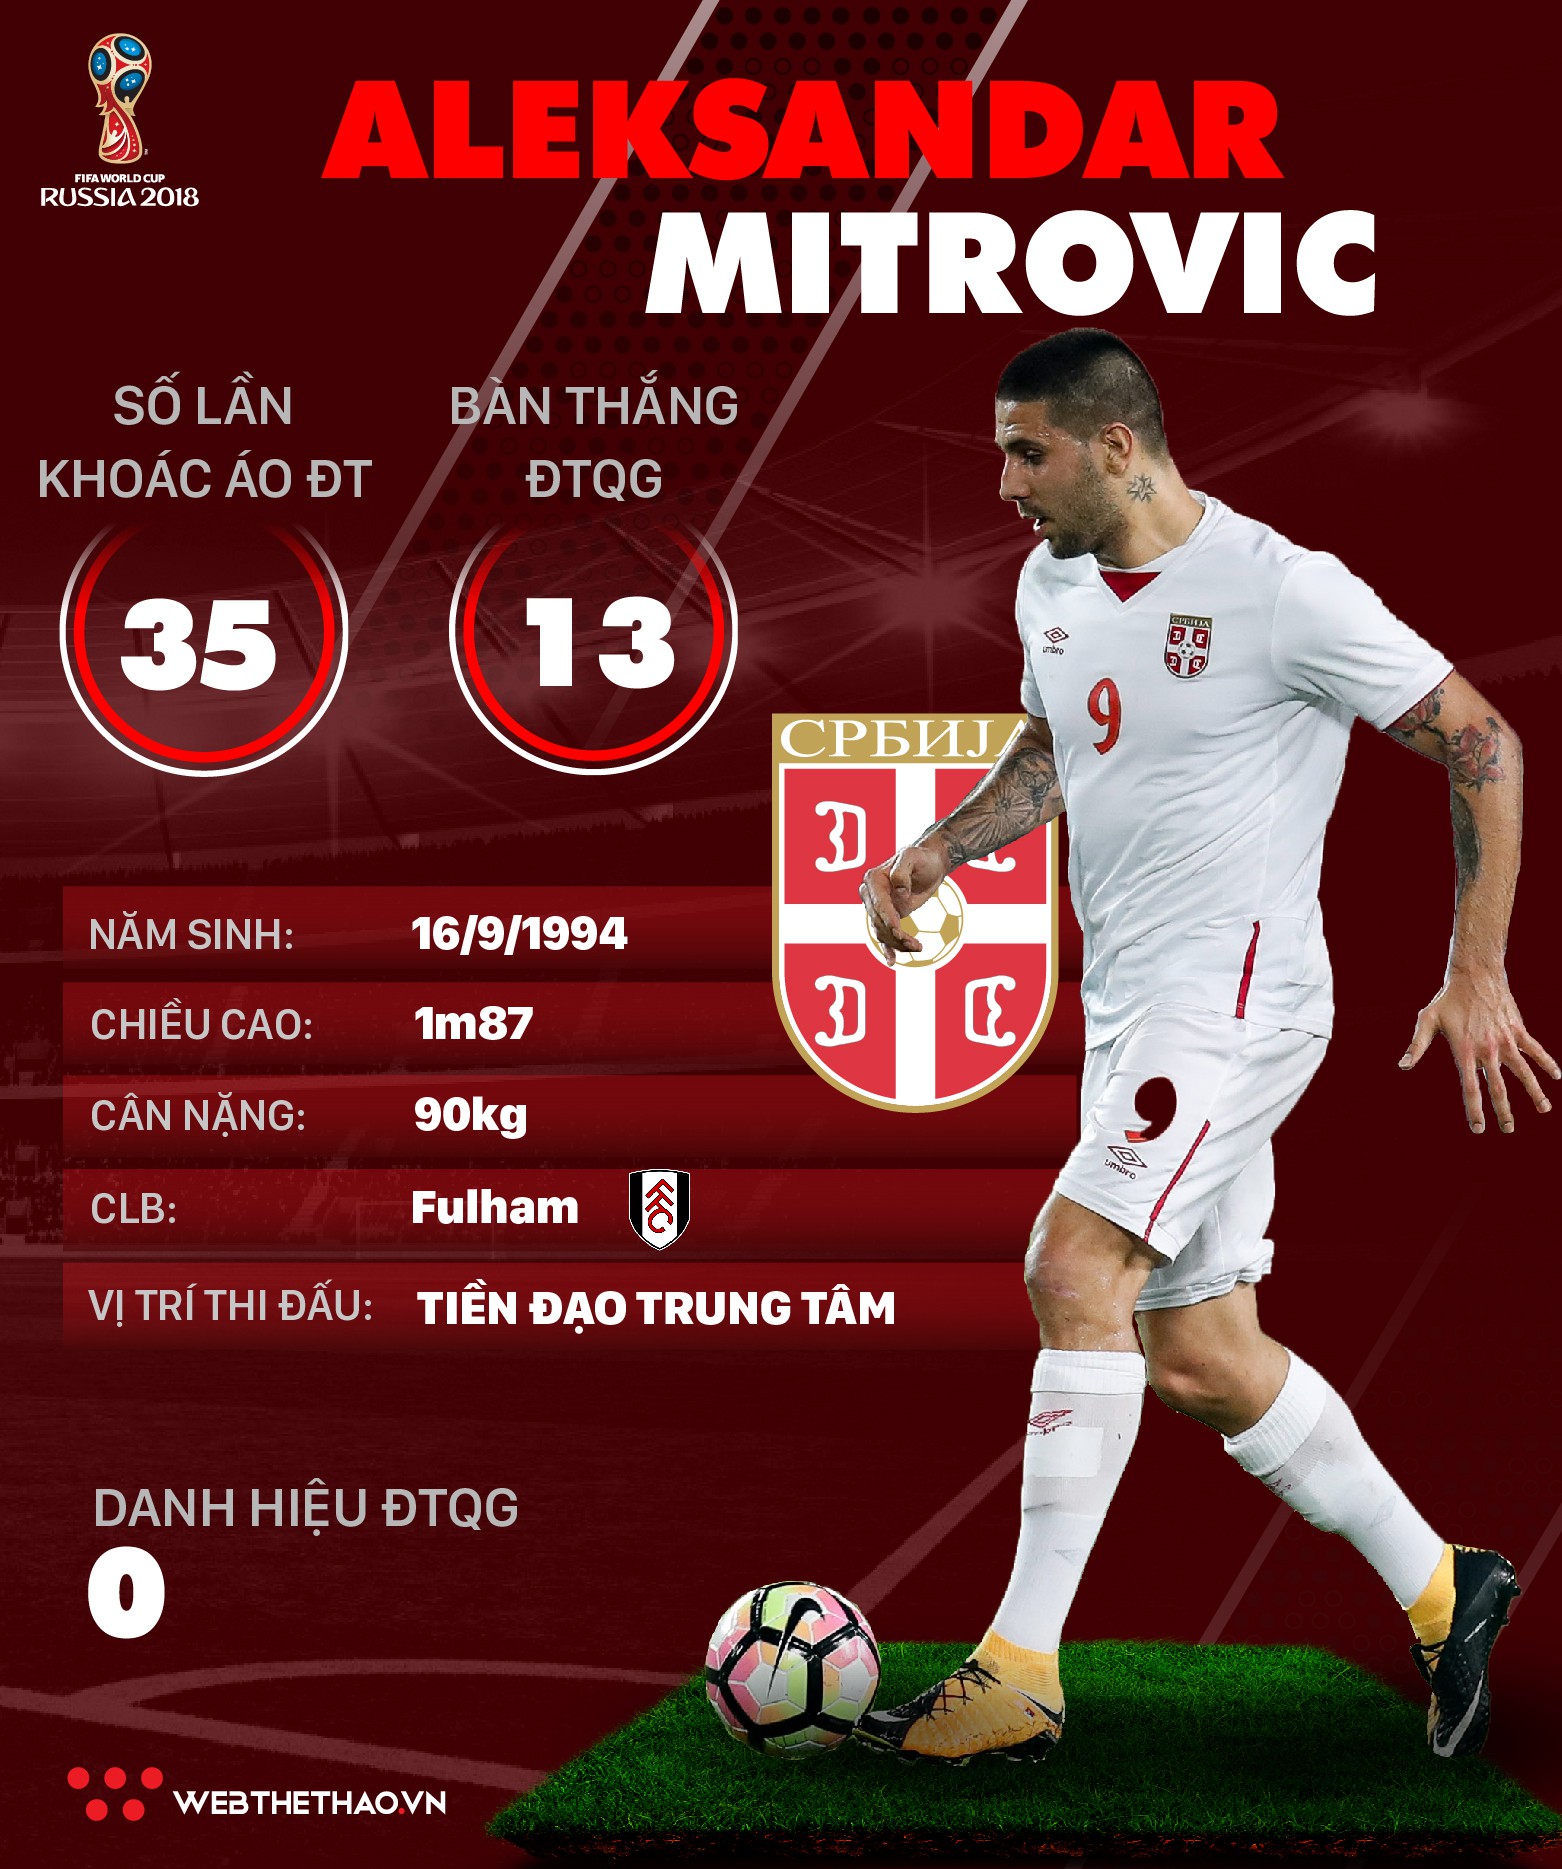 Thông tin cầu thủ Aleksandar Mitrovic của ĐT Serbia dự World Cup 2018 - Ảnh 1.